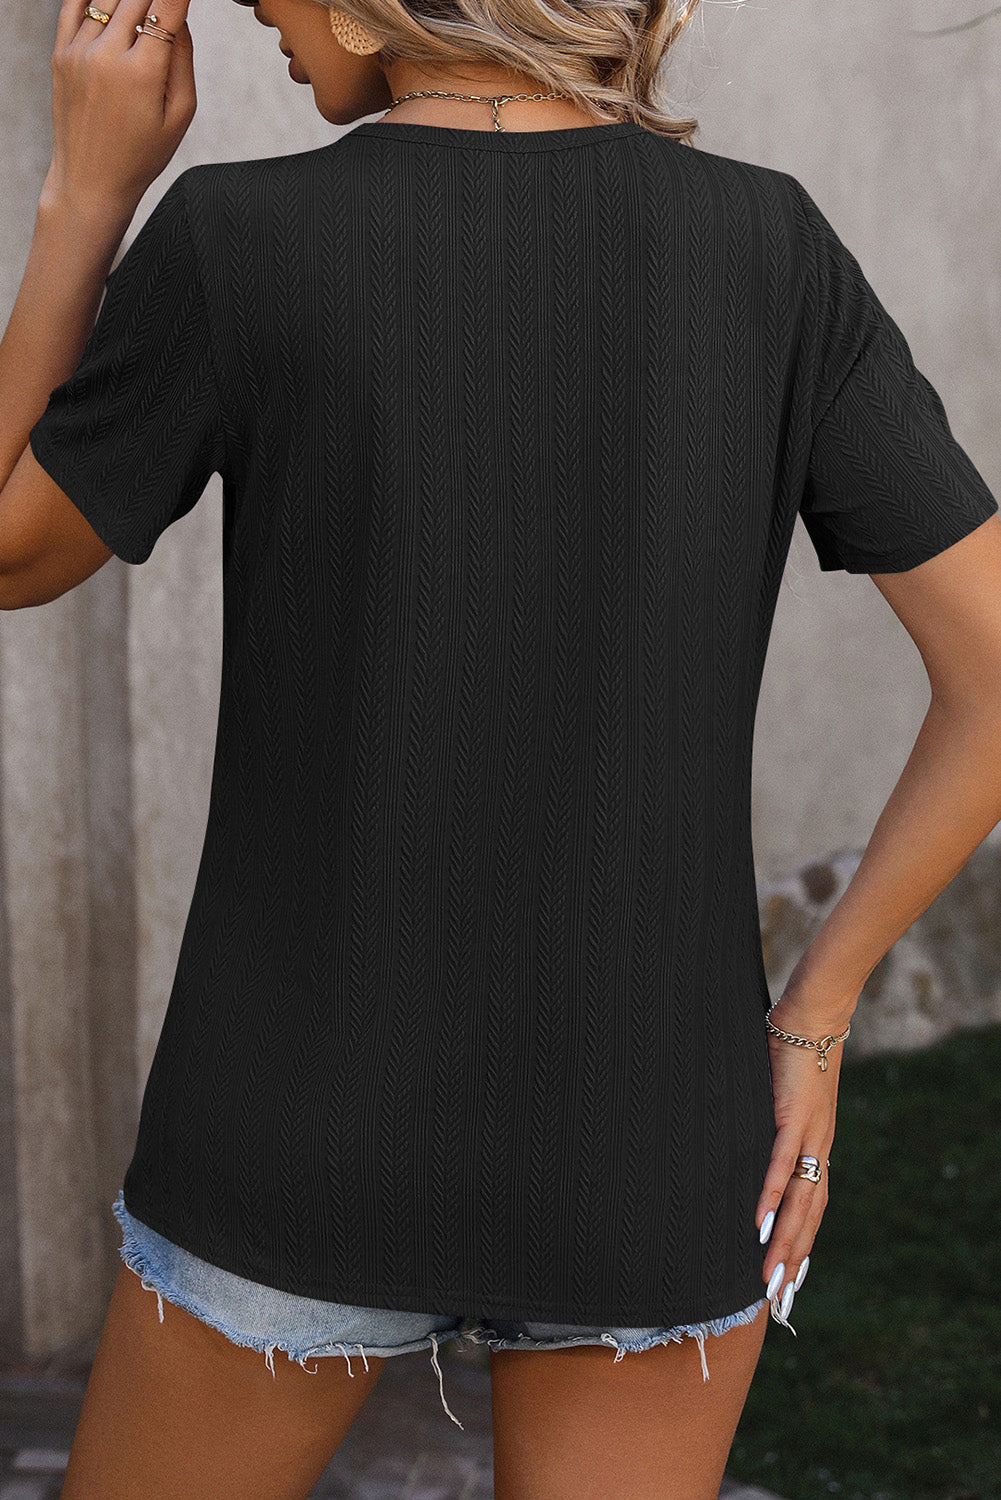 T-shirt testurizzata alla moda con dettagli a fessura con bottoni neri